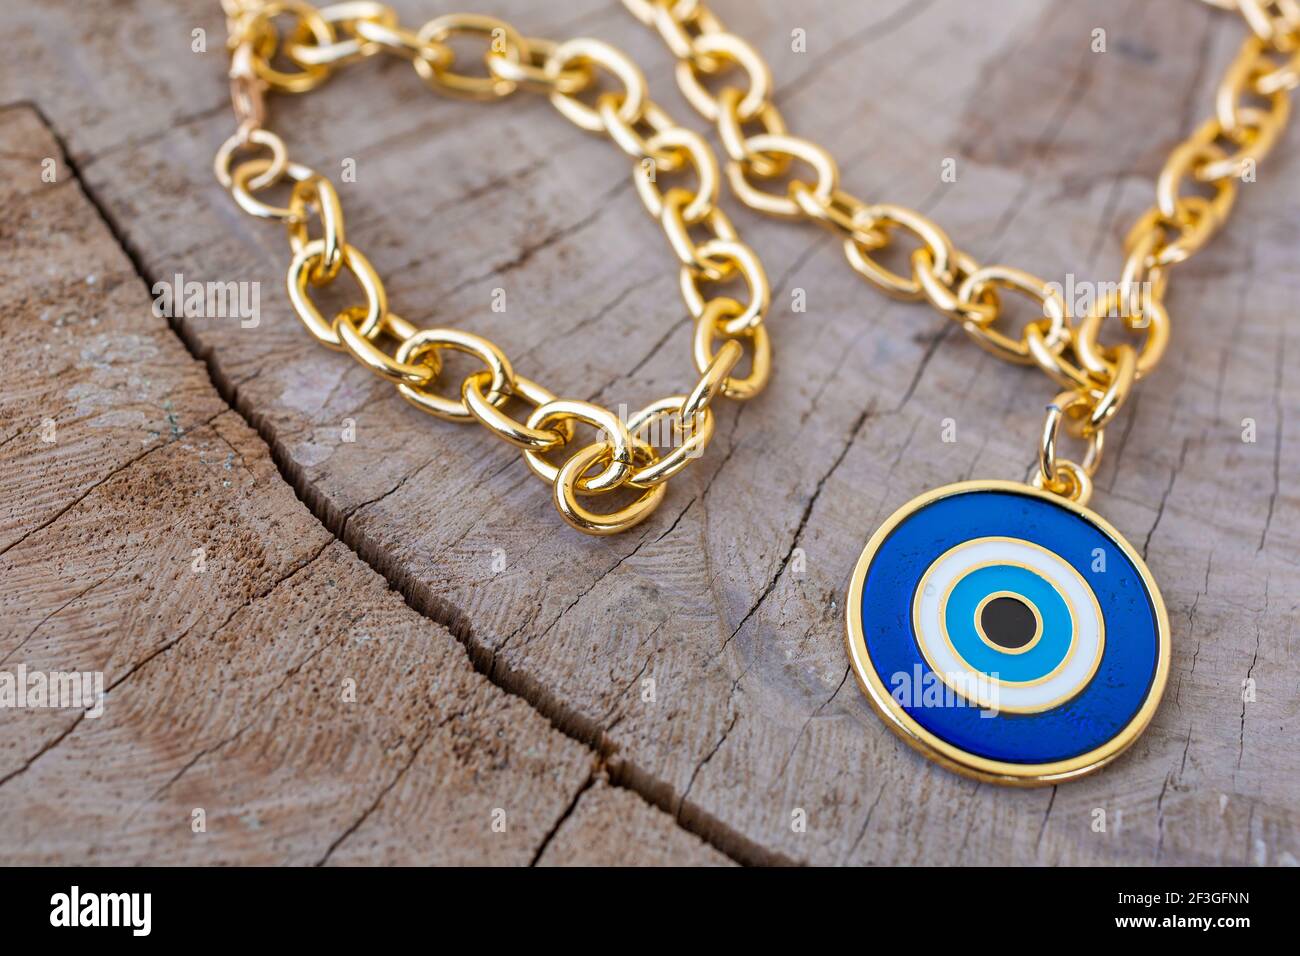 Eine Nahaufnahme einer goldenen Kette Halskette mit einem Blauer Bullseye-Anhänger auf einer Holzoberfläche Stockfoto